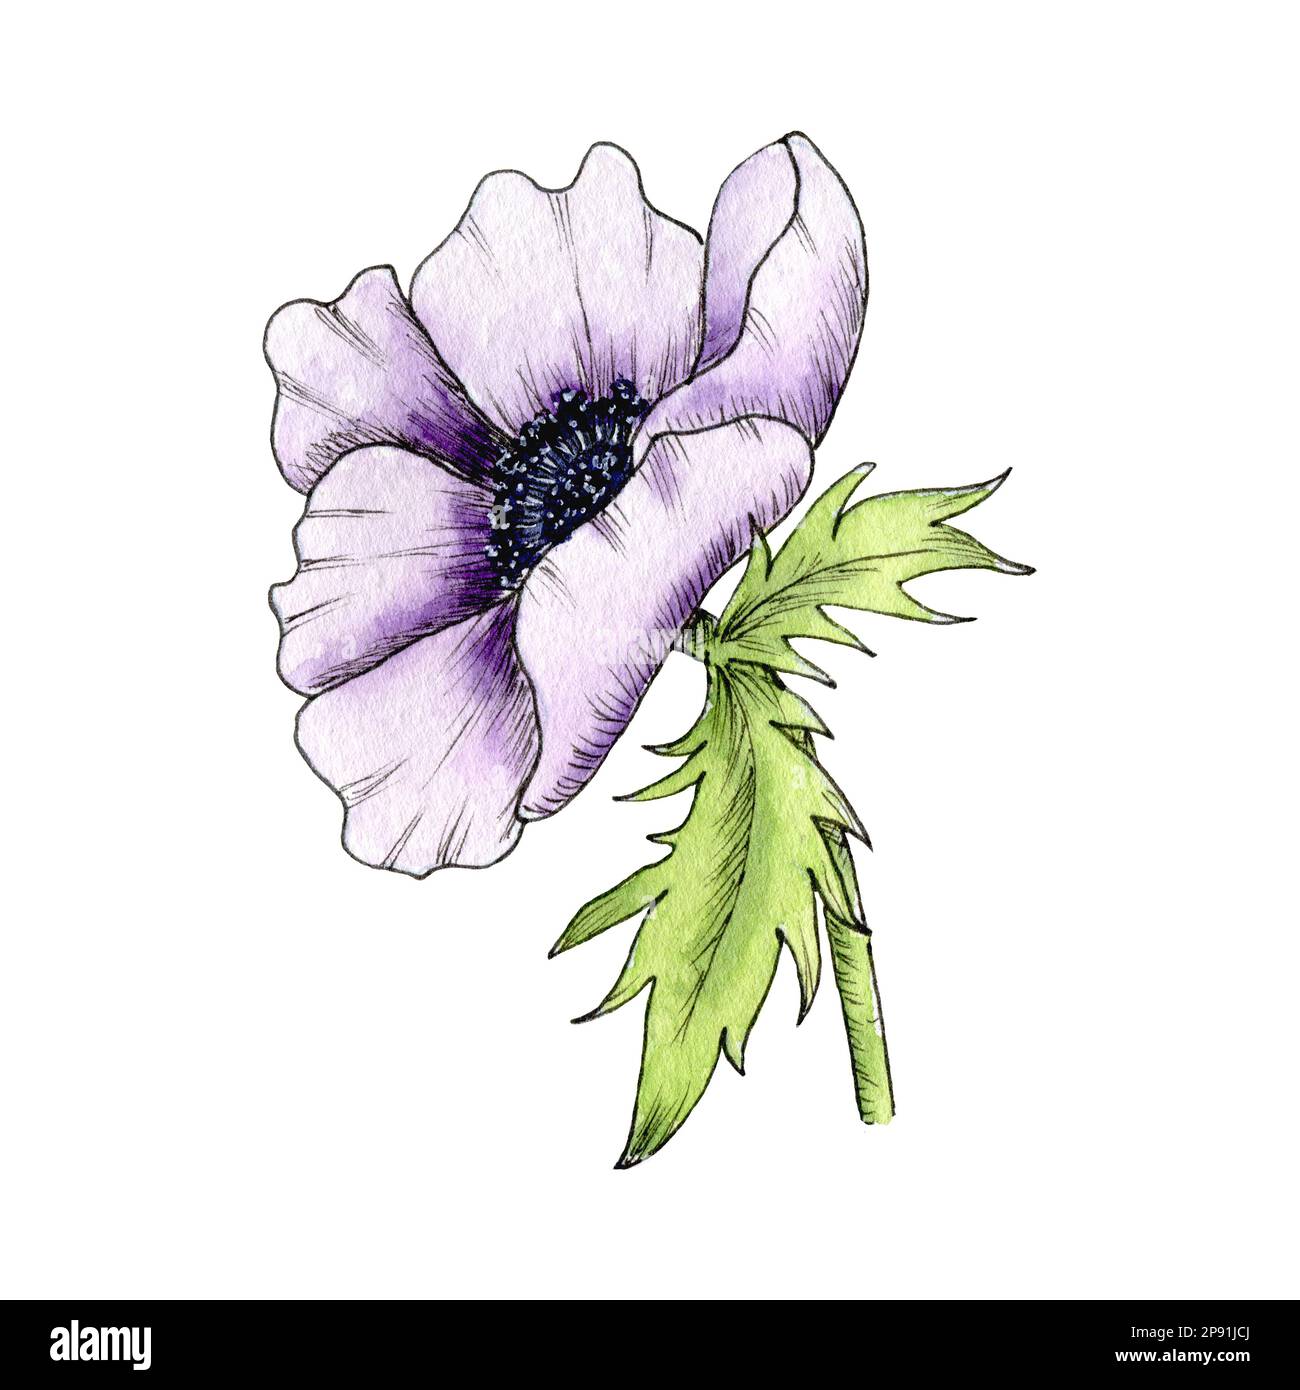 Aquarelle Fleur Anemone, coquelicot, pivoine. Illustration d'anémone dessinée à la main isolée sur fond blanc. Anémone violet. Banque D'Images